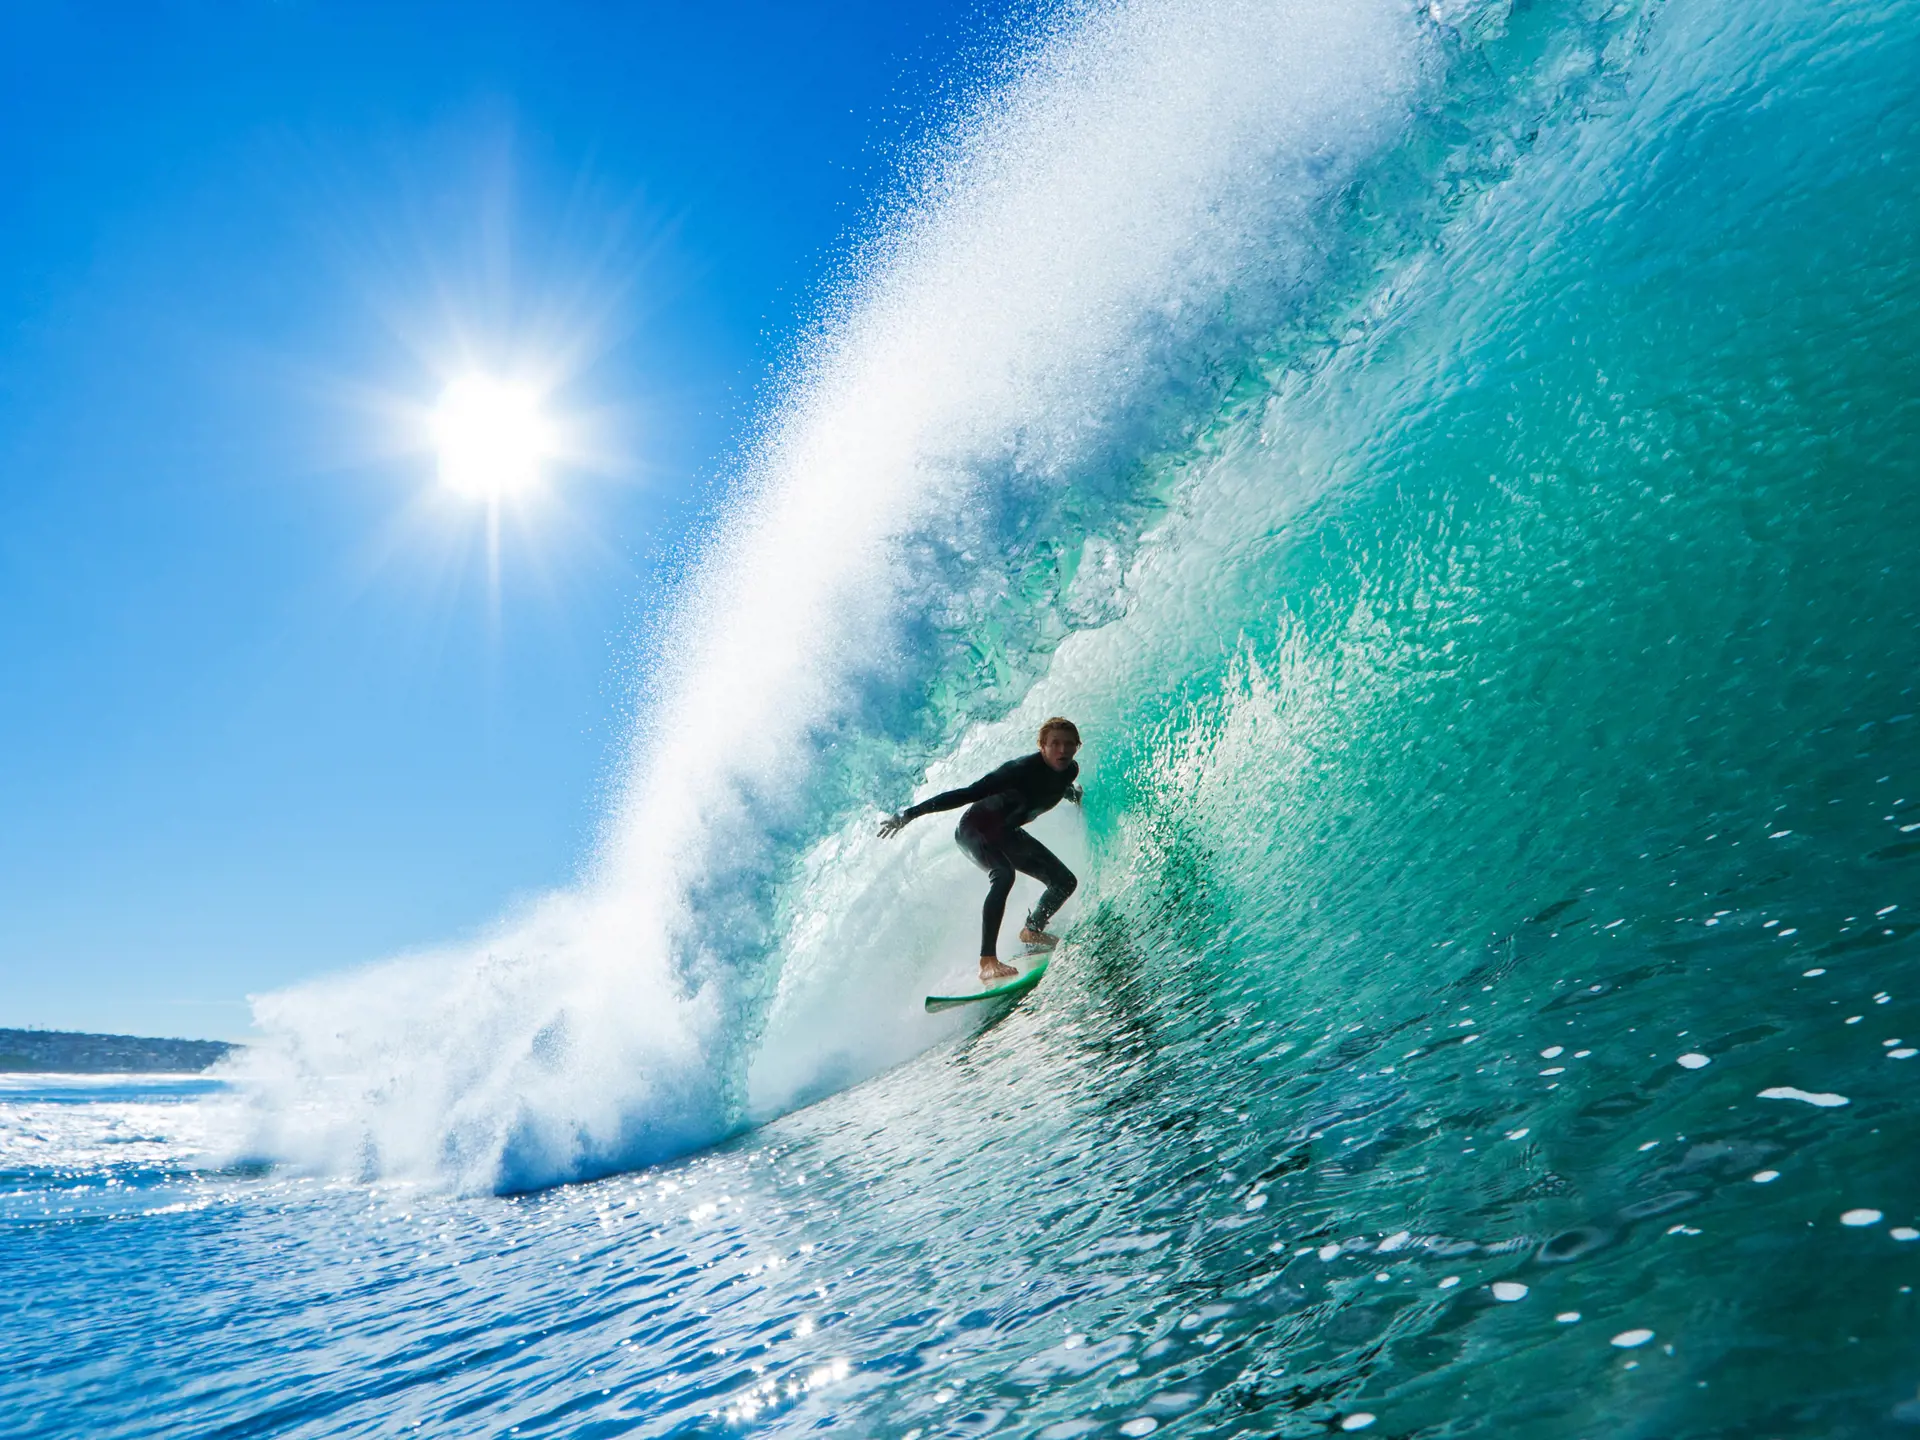 OAHU - Bølgerne på nordkysten er store, og surferne boltrer sig i det lune vand.